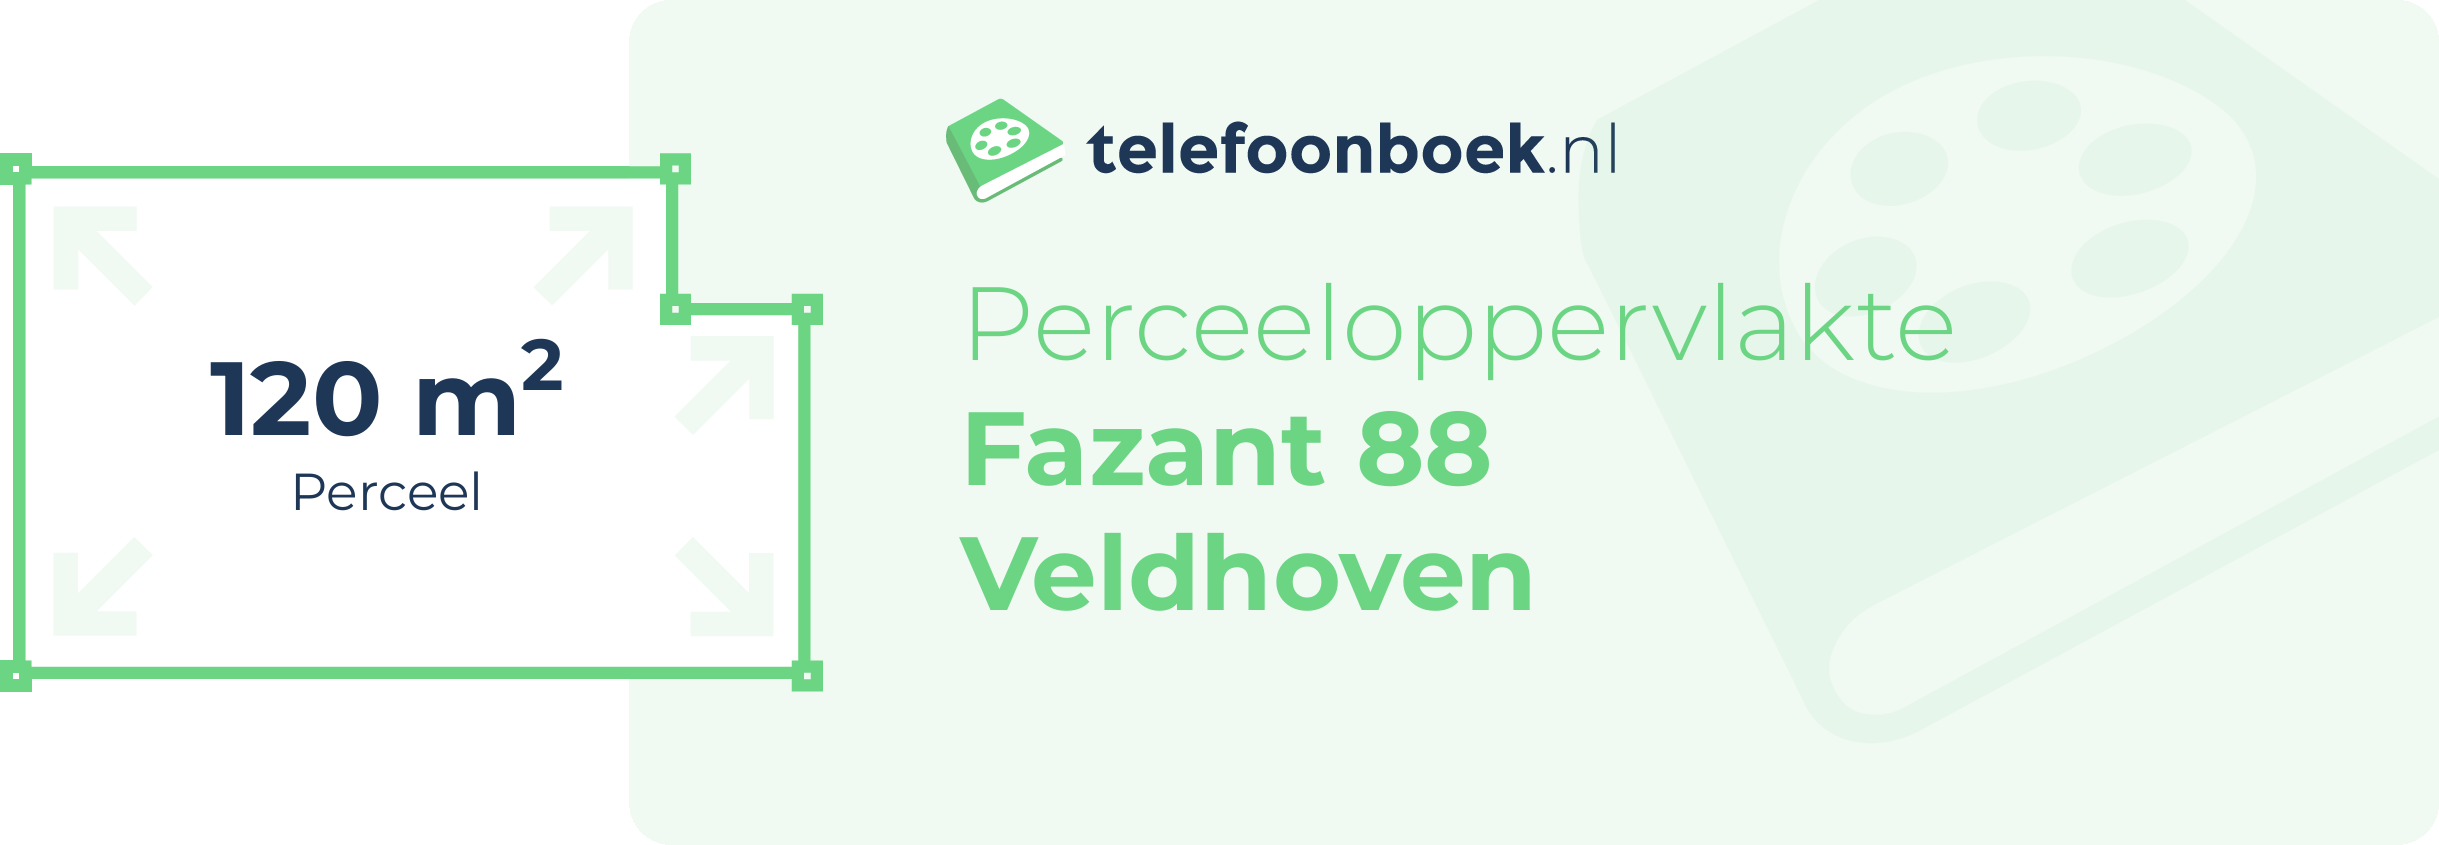 Perceeloppervlakte Fazant 88 Veldhoven